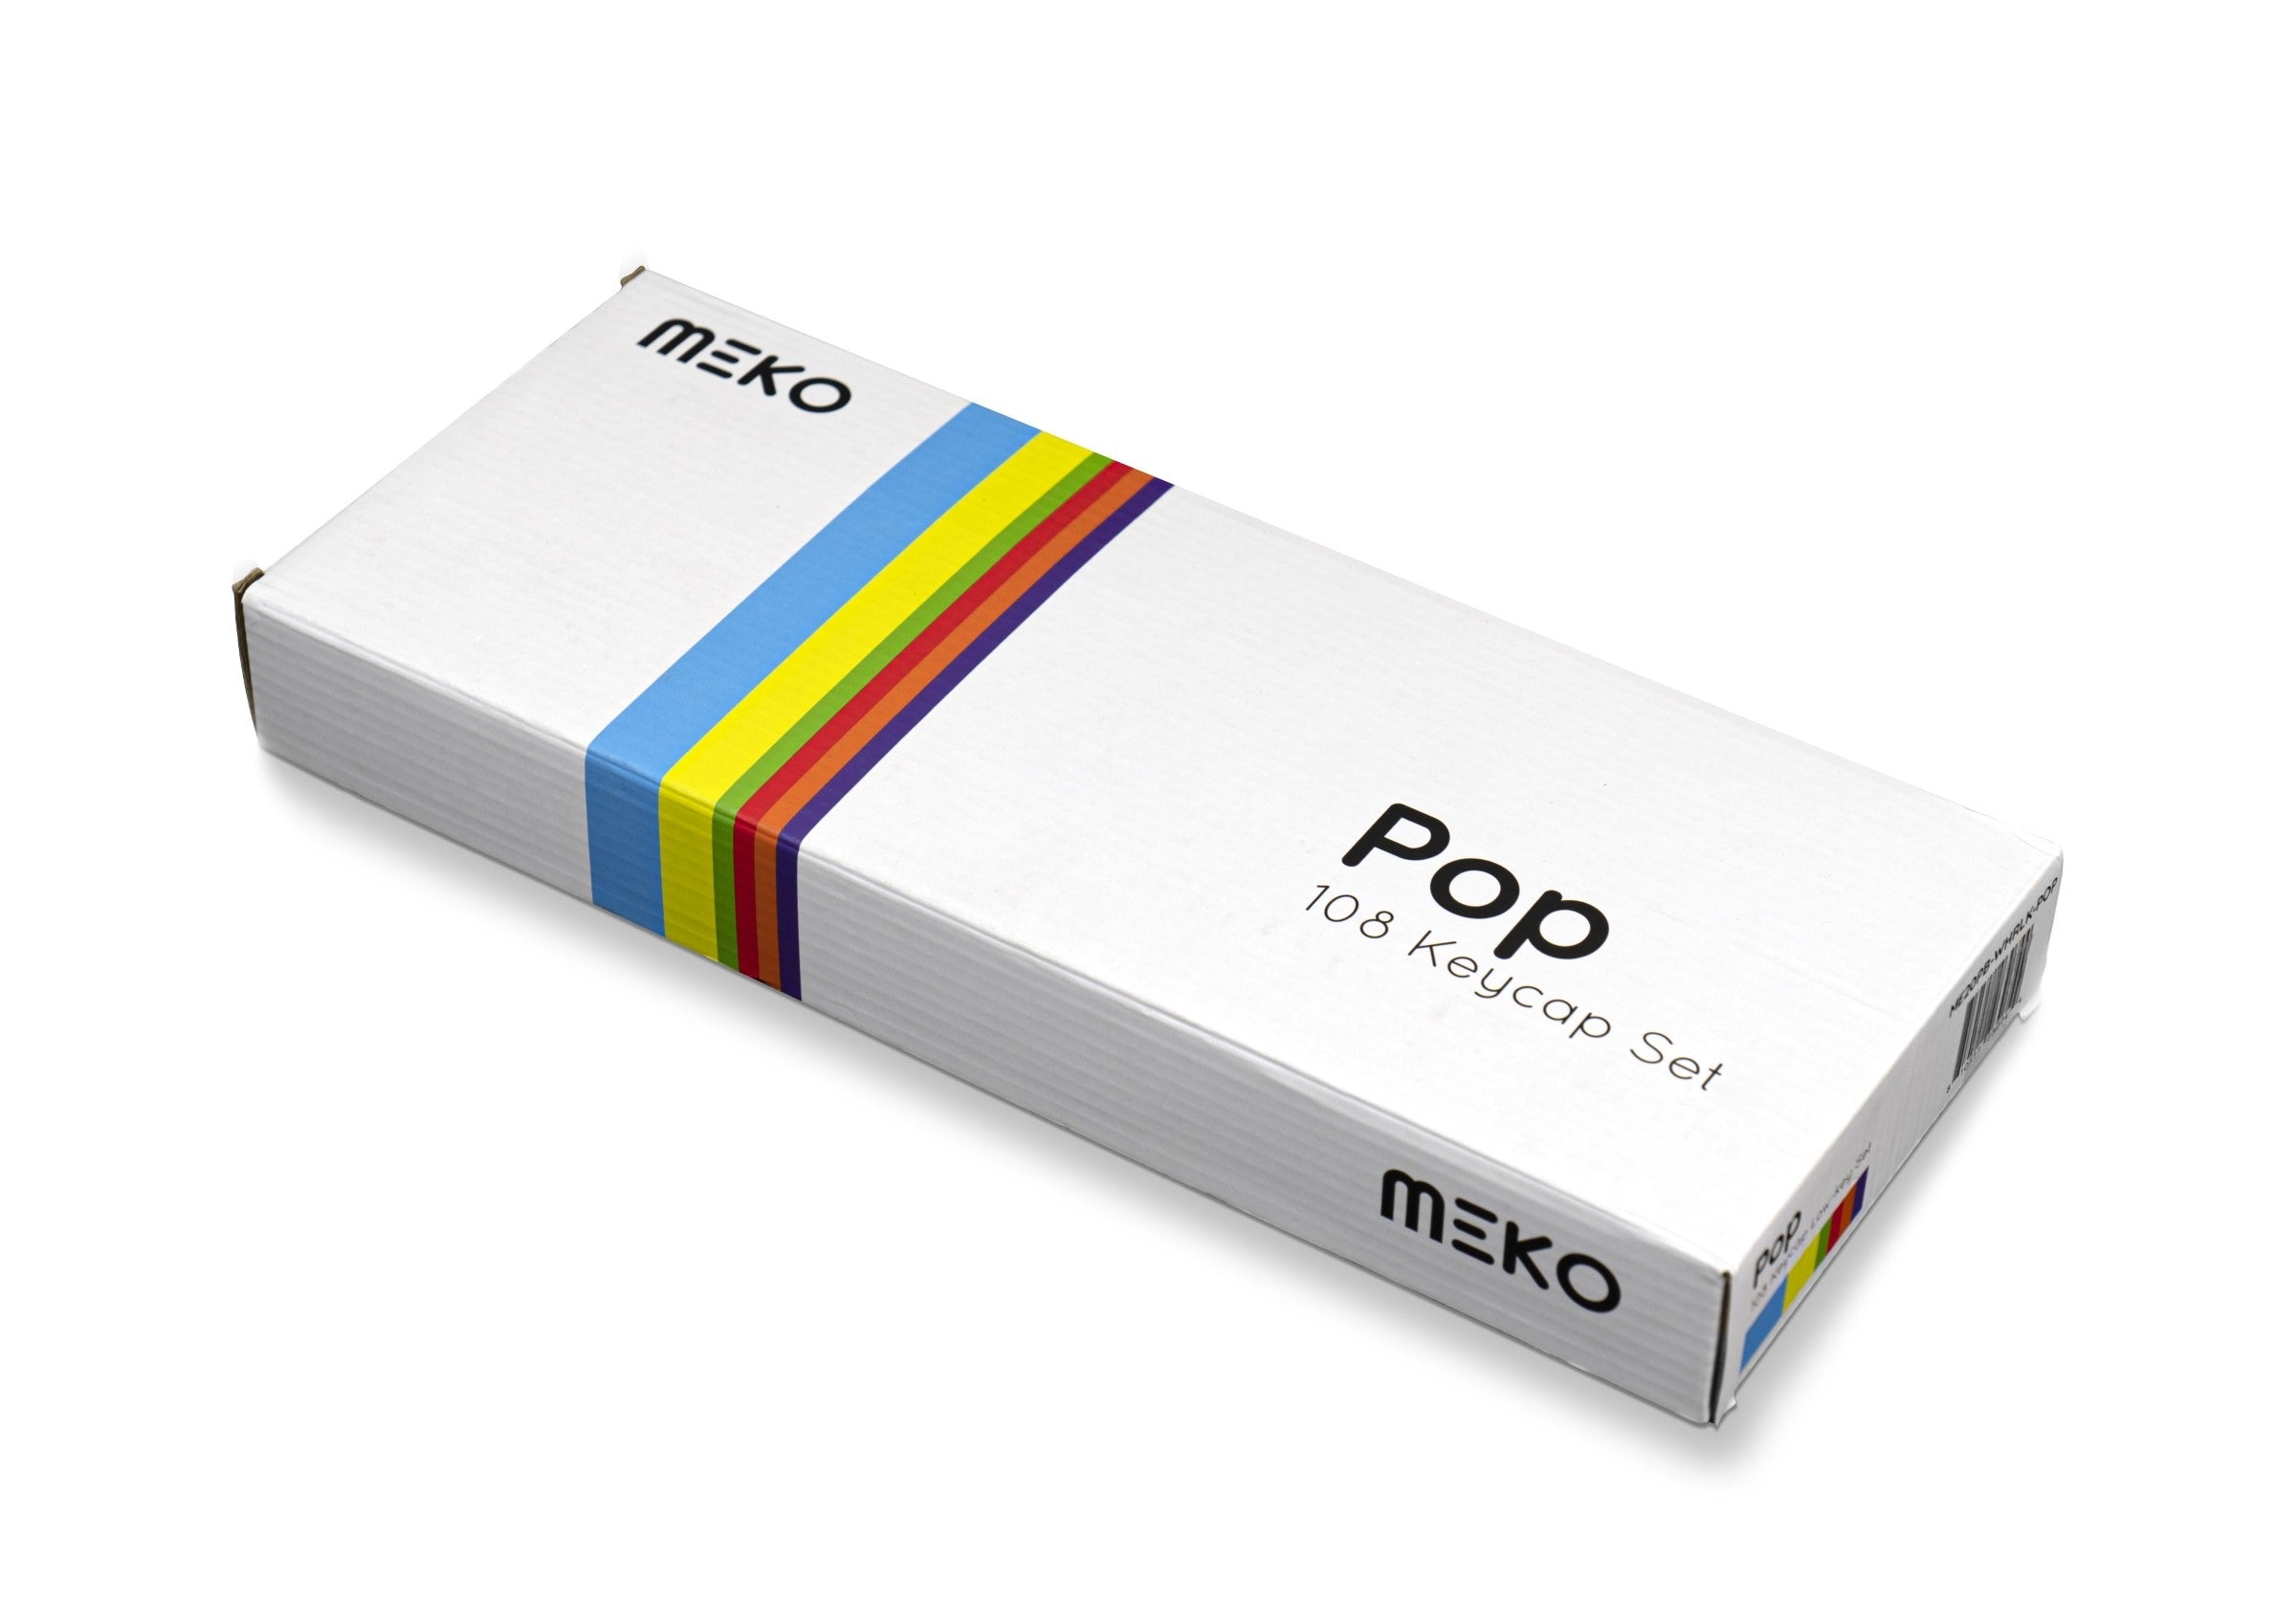 Meko Pop Side Print 108 Key ODM Profile Laser Etched PBT MKFTS7TOW0 |27376|